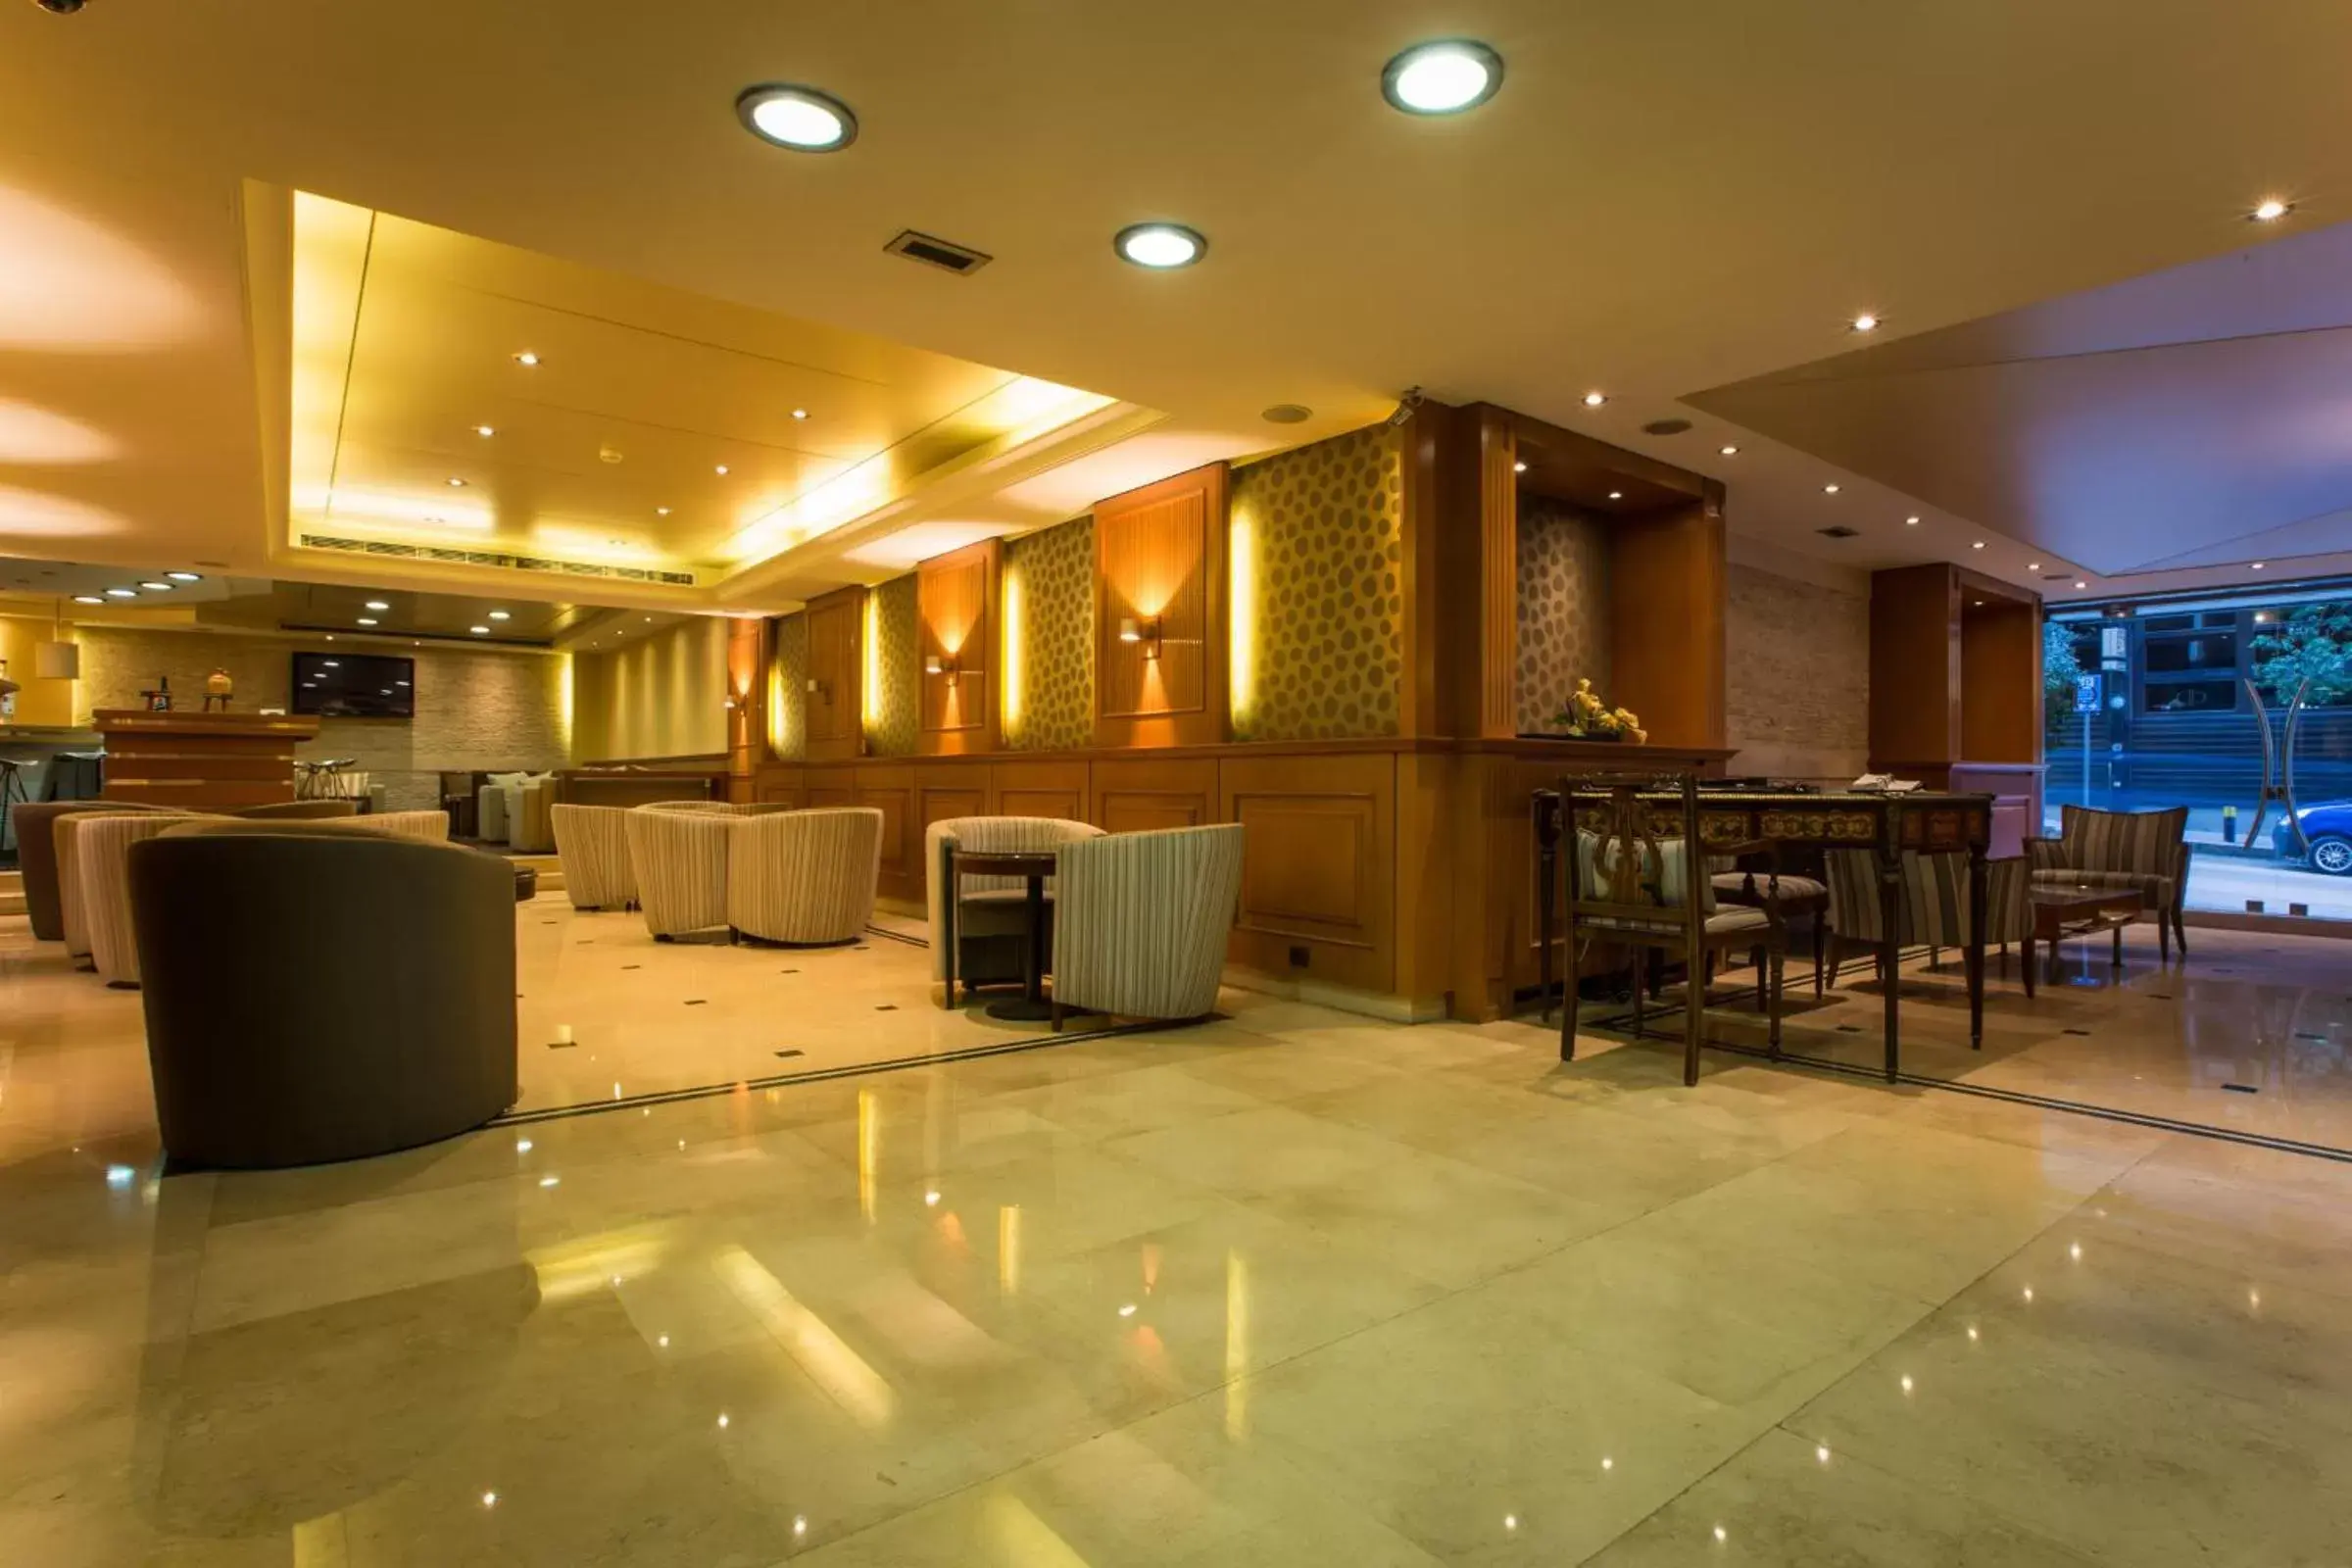 Lobby or reception, Banquet Facilities in Hotel Cavalier